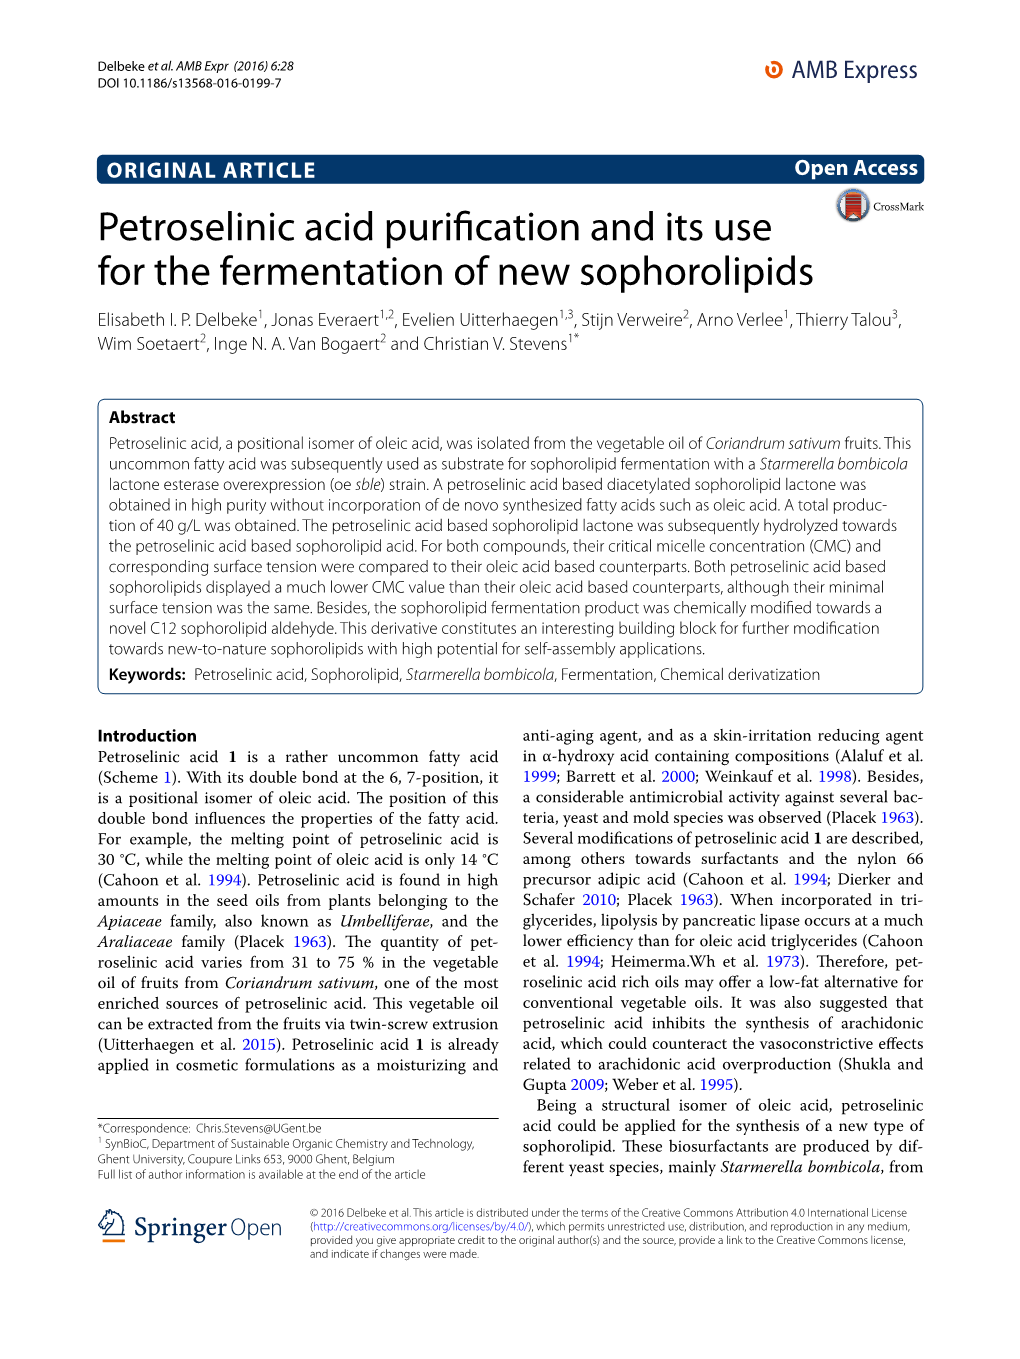 Petroselinic Acid Purification and Its Use for the Fermentation of New Sophorolipids Elisabeth I